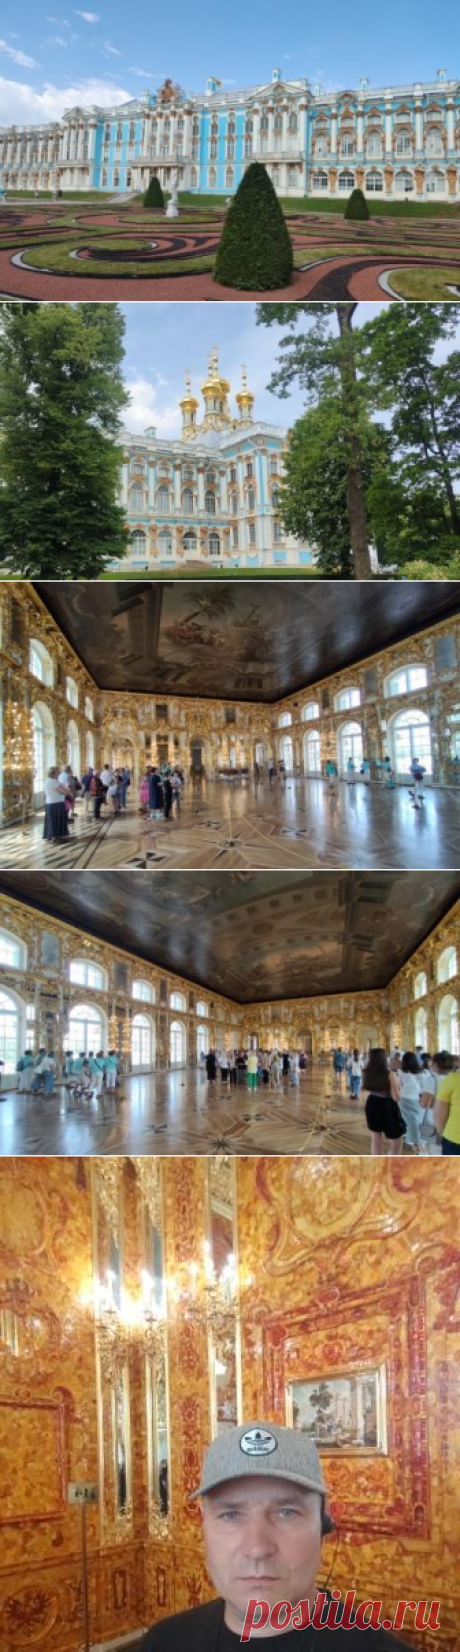 Екатерининский дворец - немного истории - Сайт о путешествиях